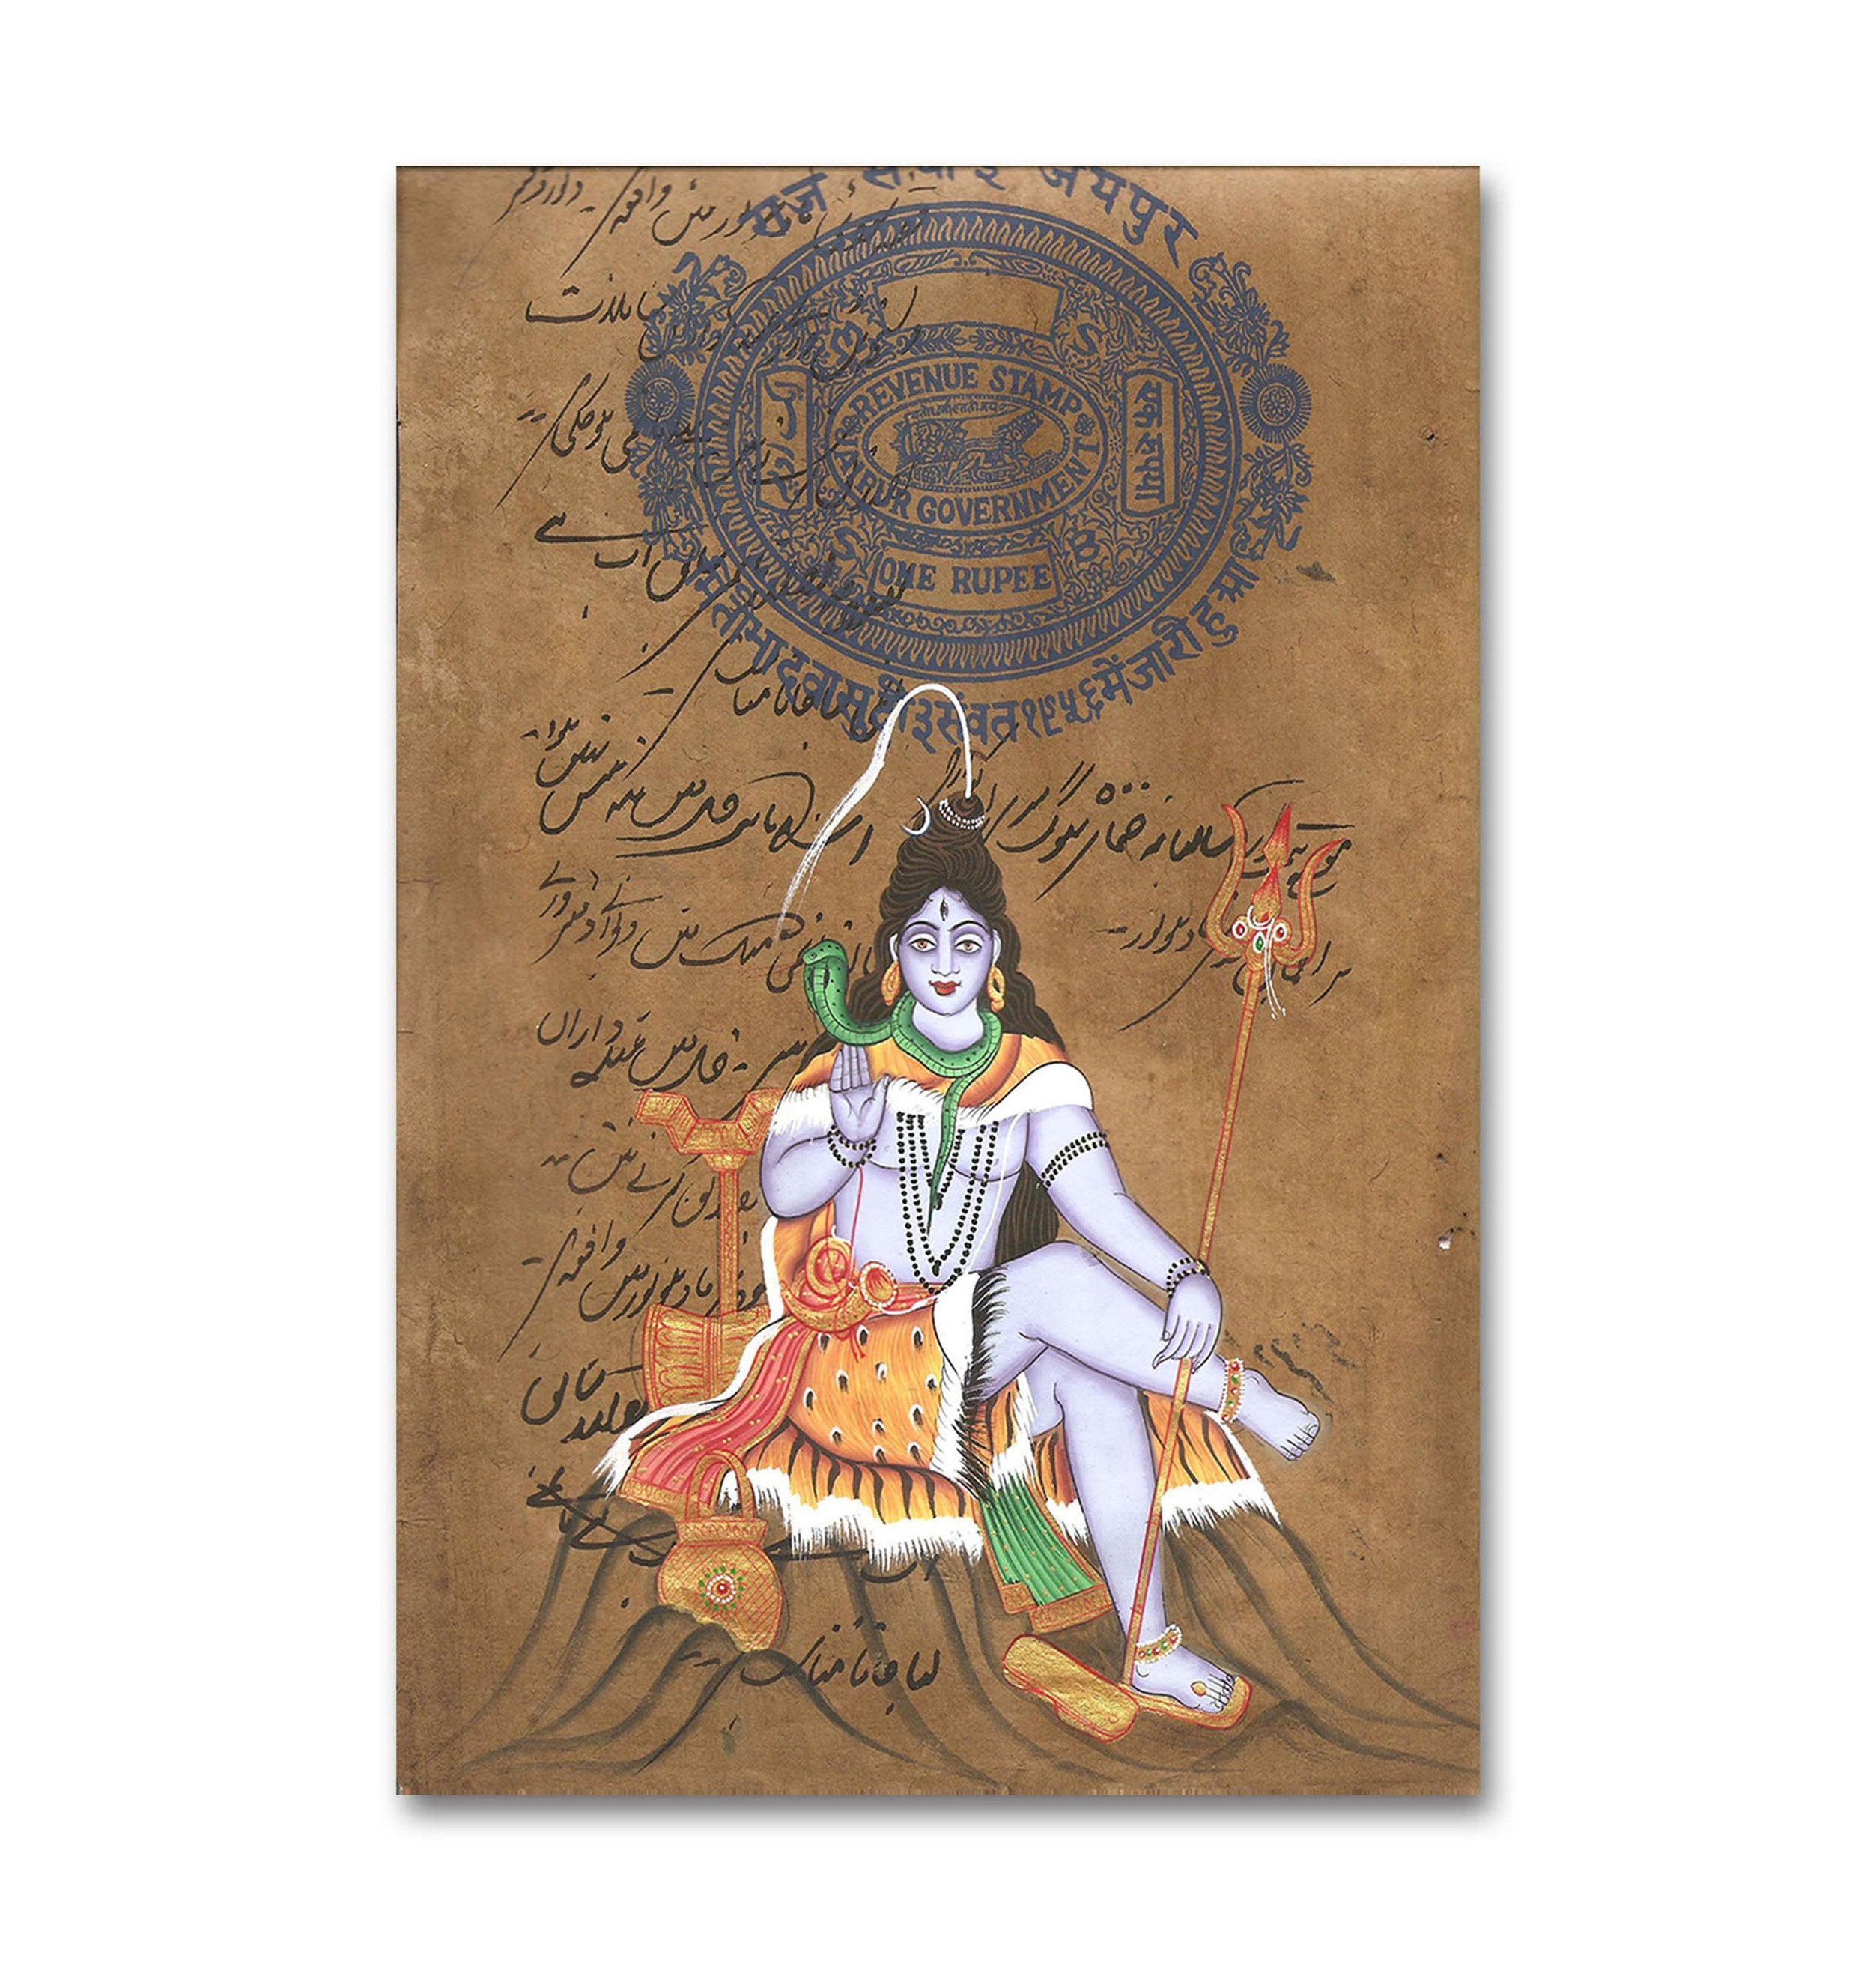 Shiva Mahadeva